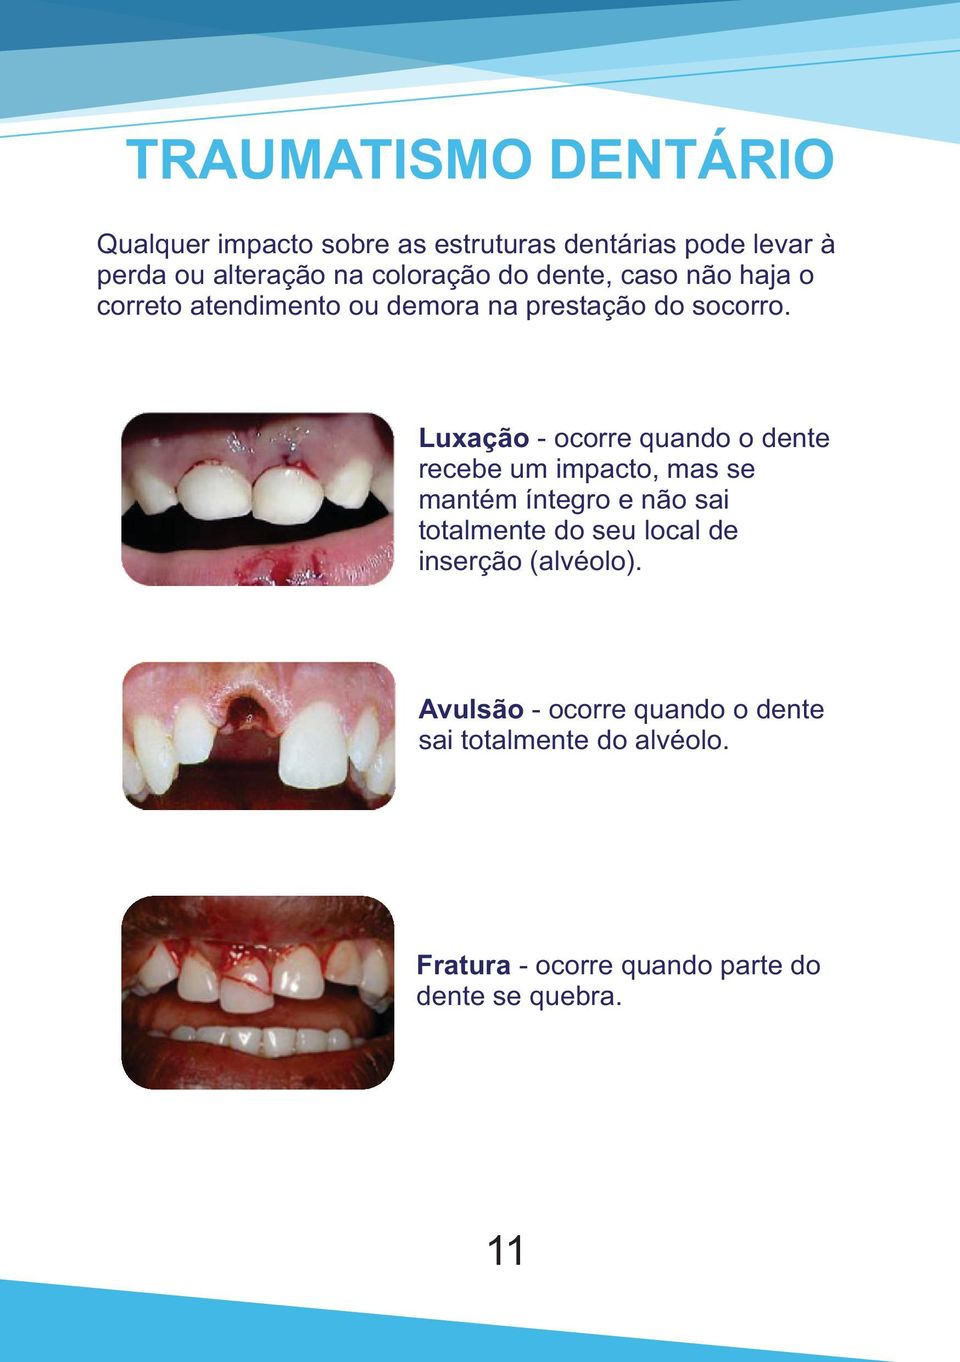 Luxação - ocorre quando o dente recebe um impacto, mas se mantém íntegro e não sai totalmente do seu local